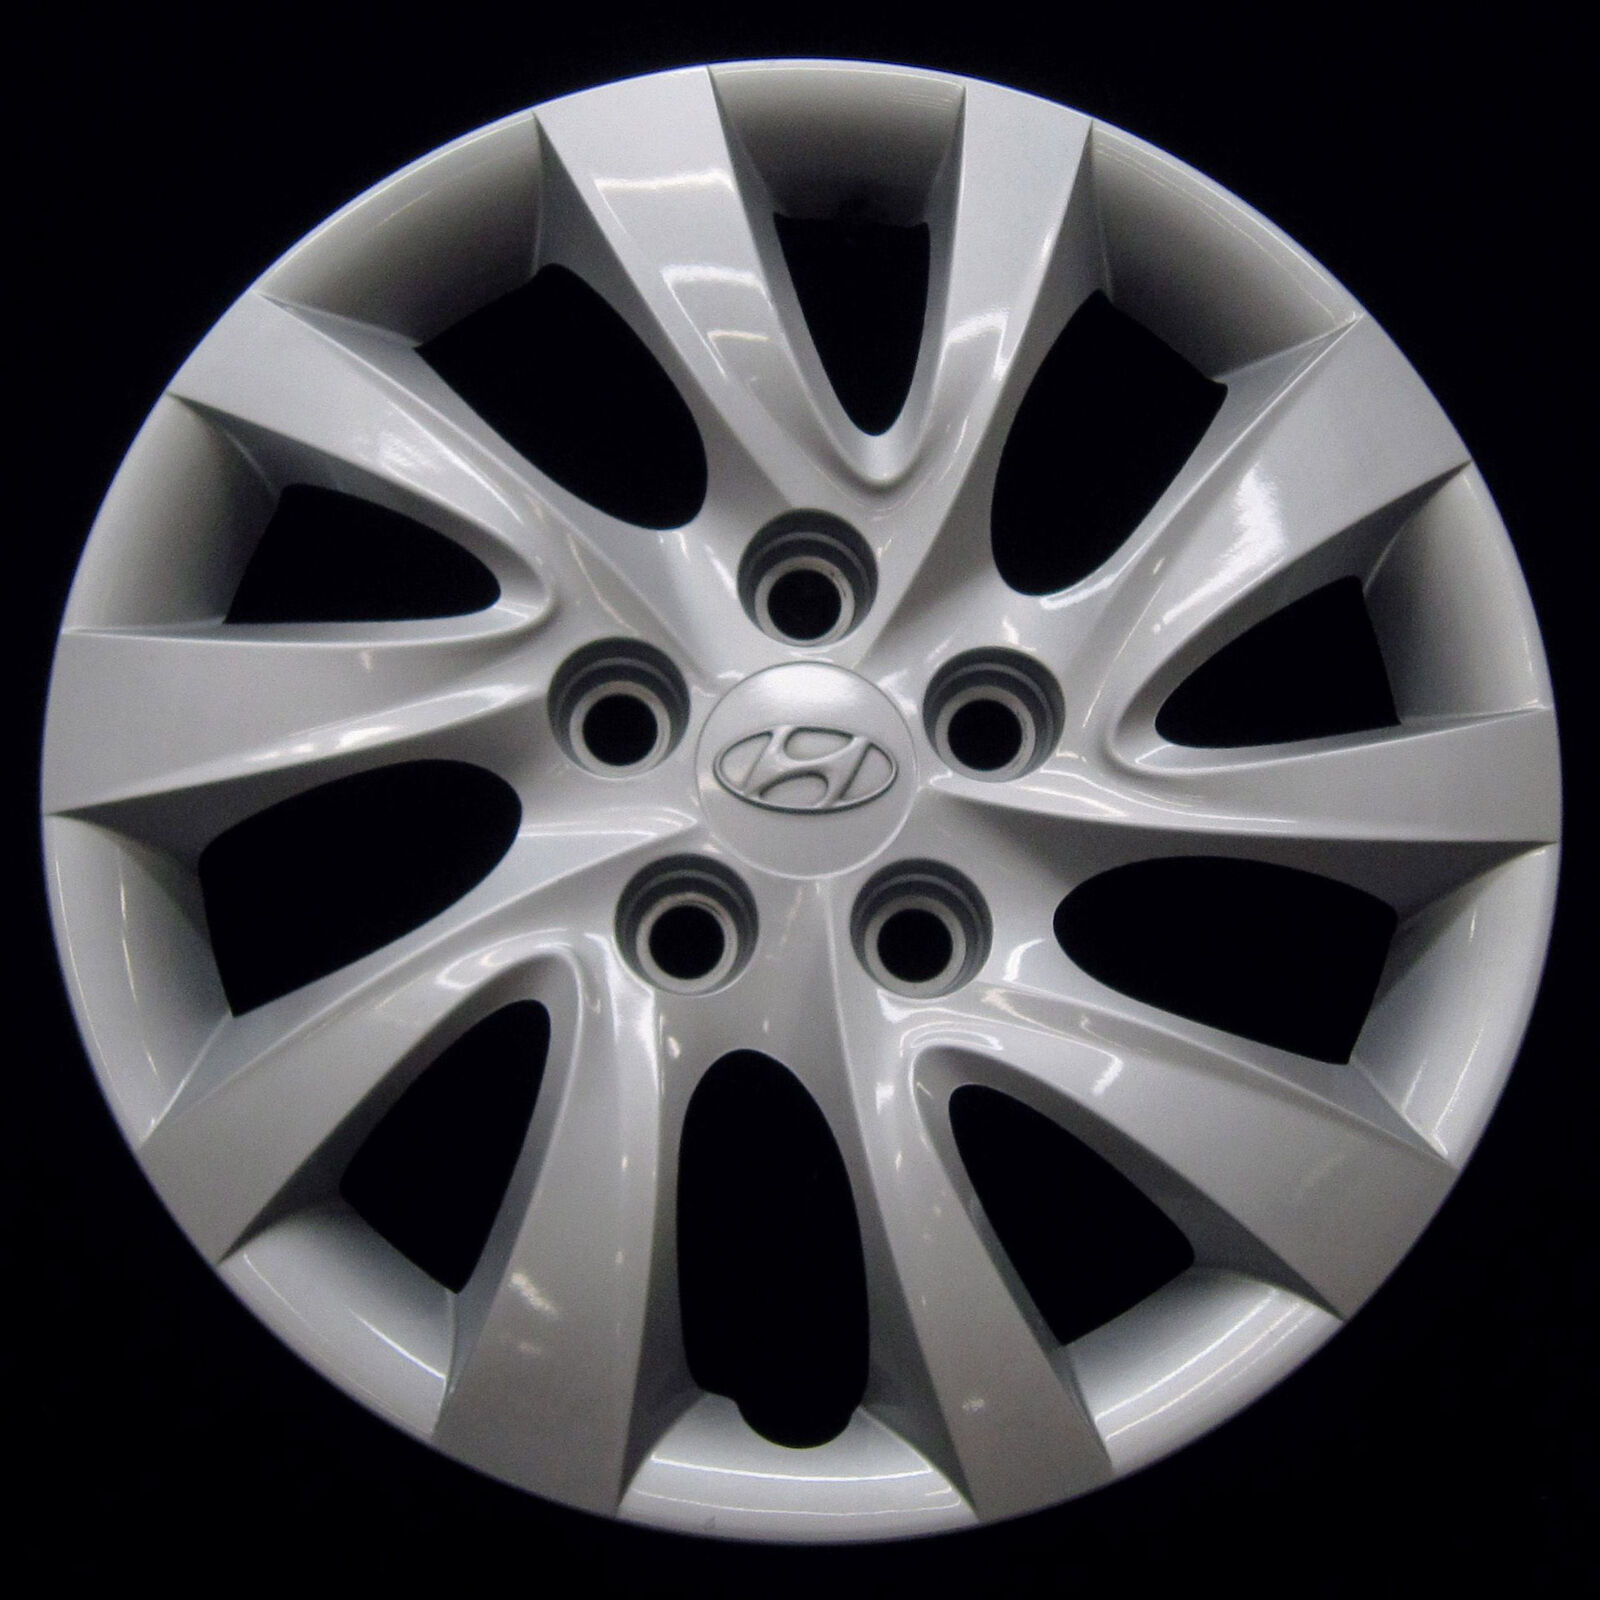 Hubcap for Hyundai Elantra 2011-2015 Genuine Factory OEM 16-in Wheel Cover 55568